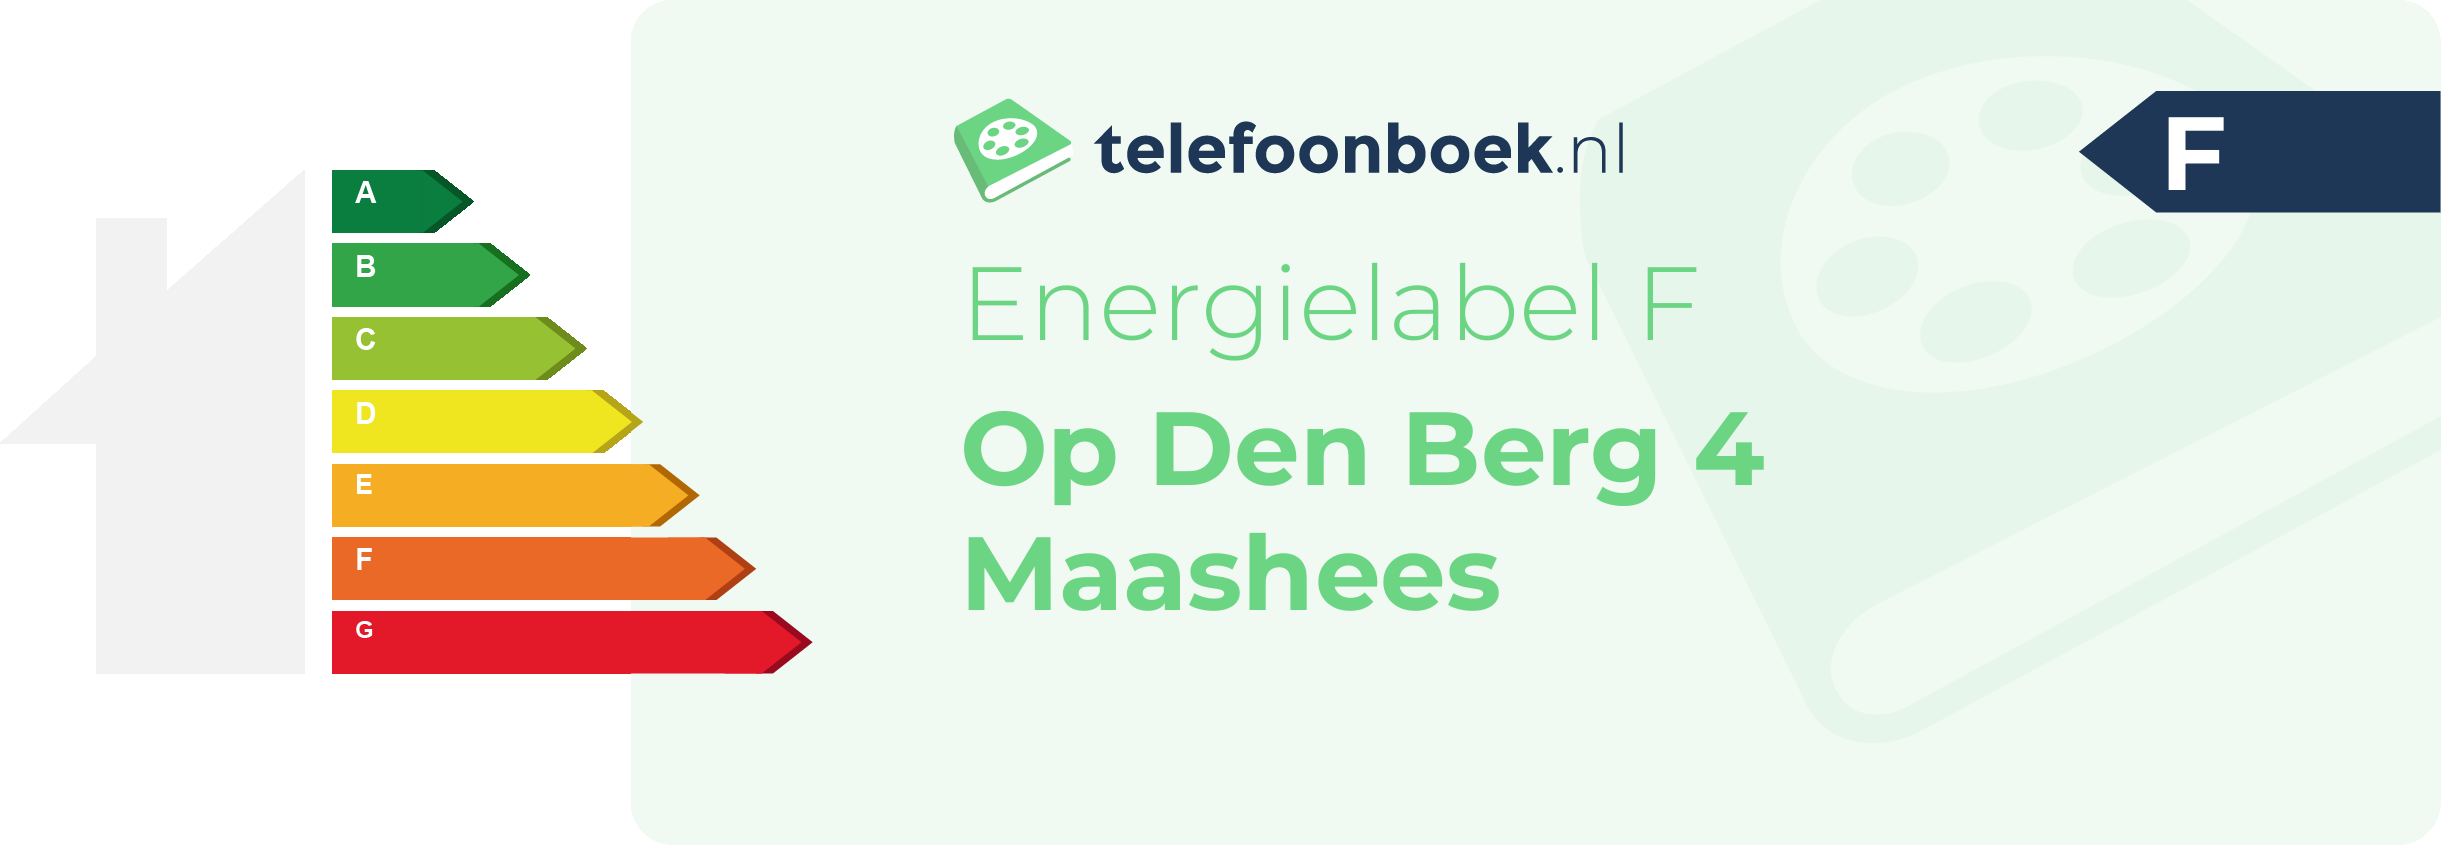 Energielabel Op Den Berg 4 Maashees